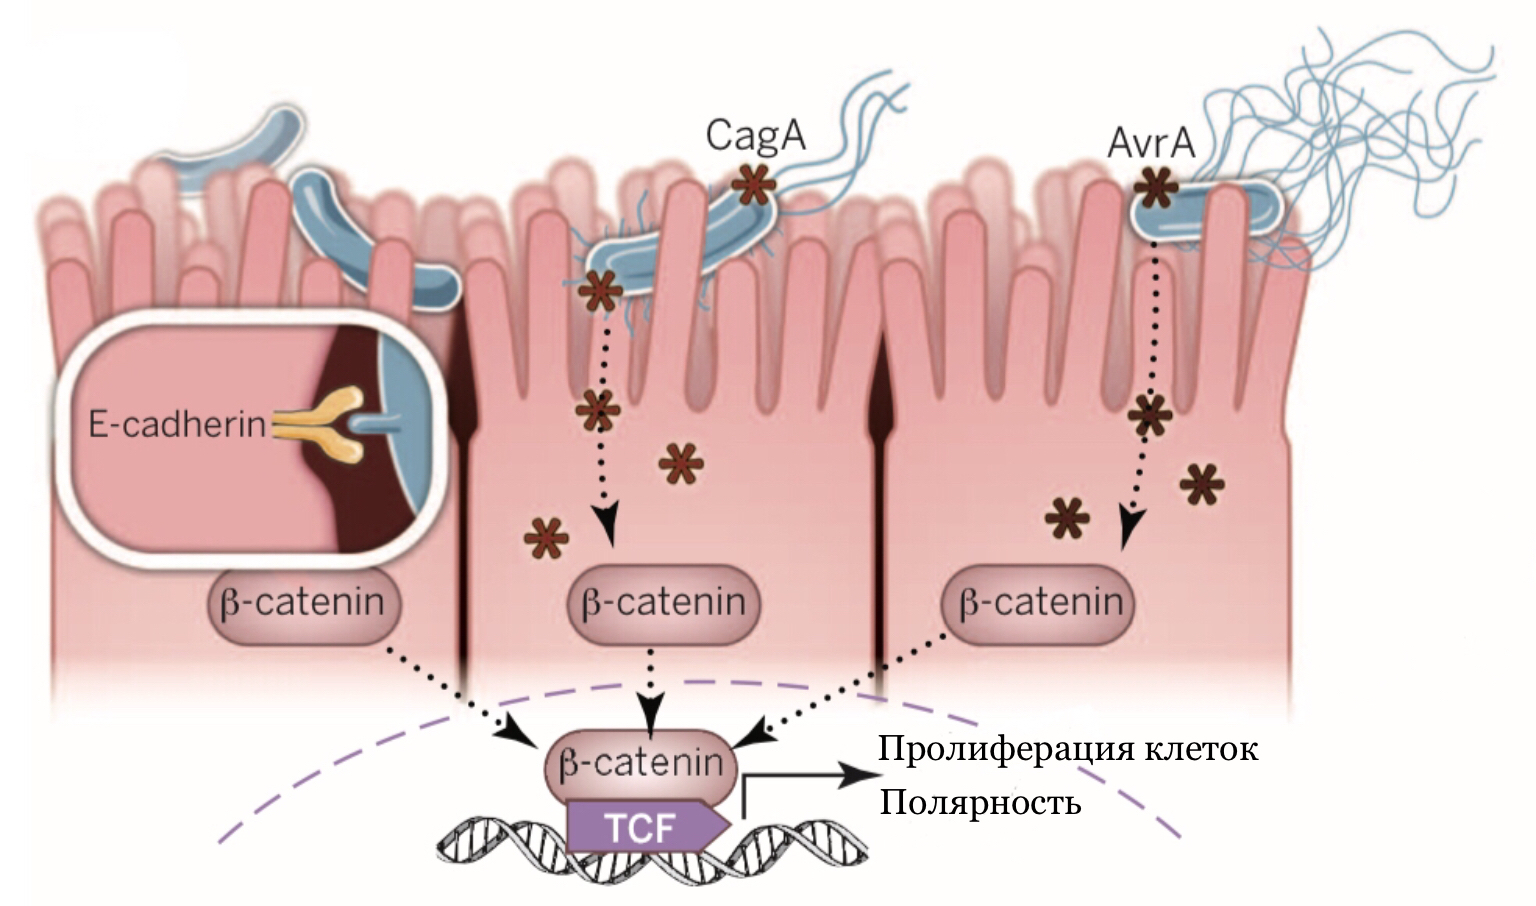 Механизмы активации пути Wnt/β-катенин бактериями